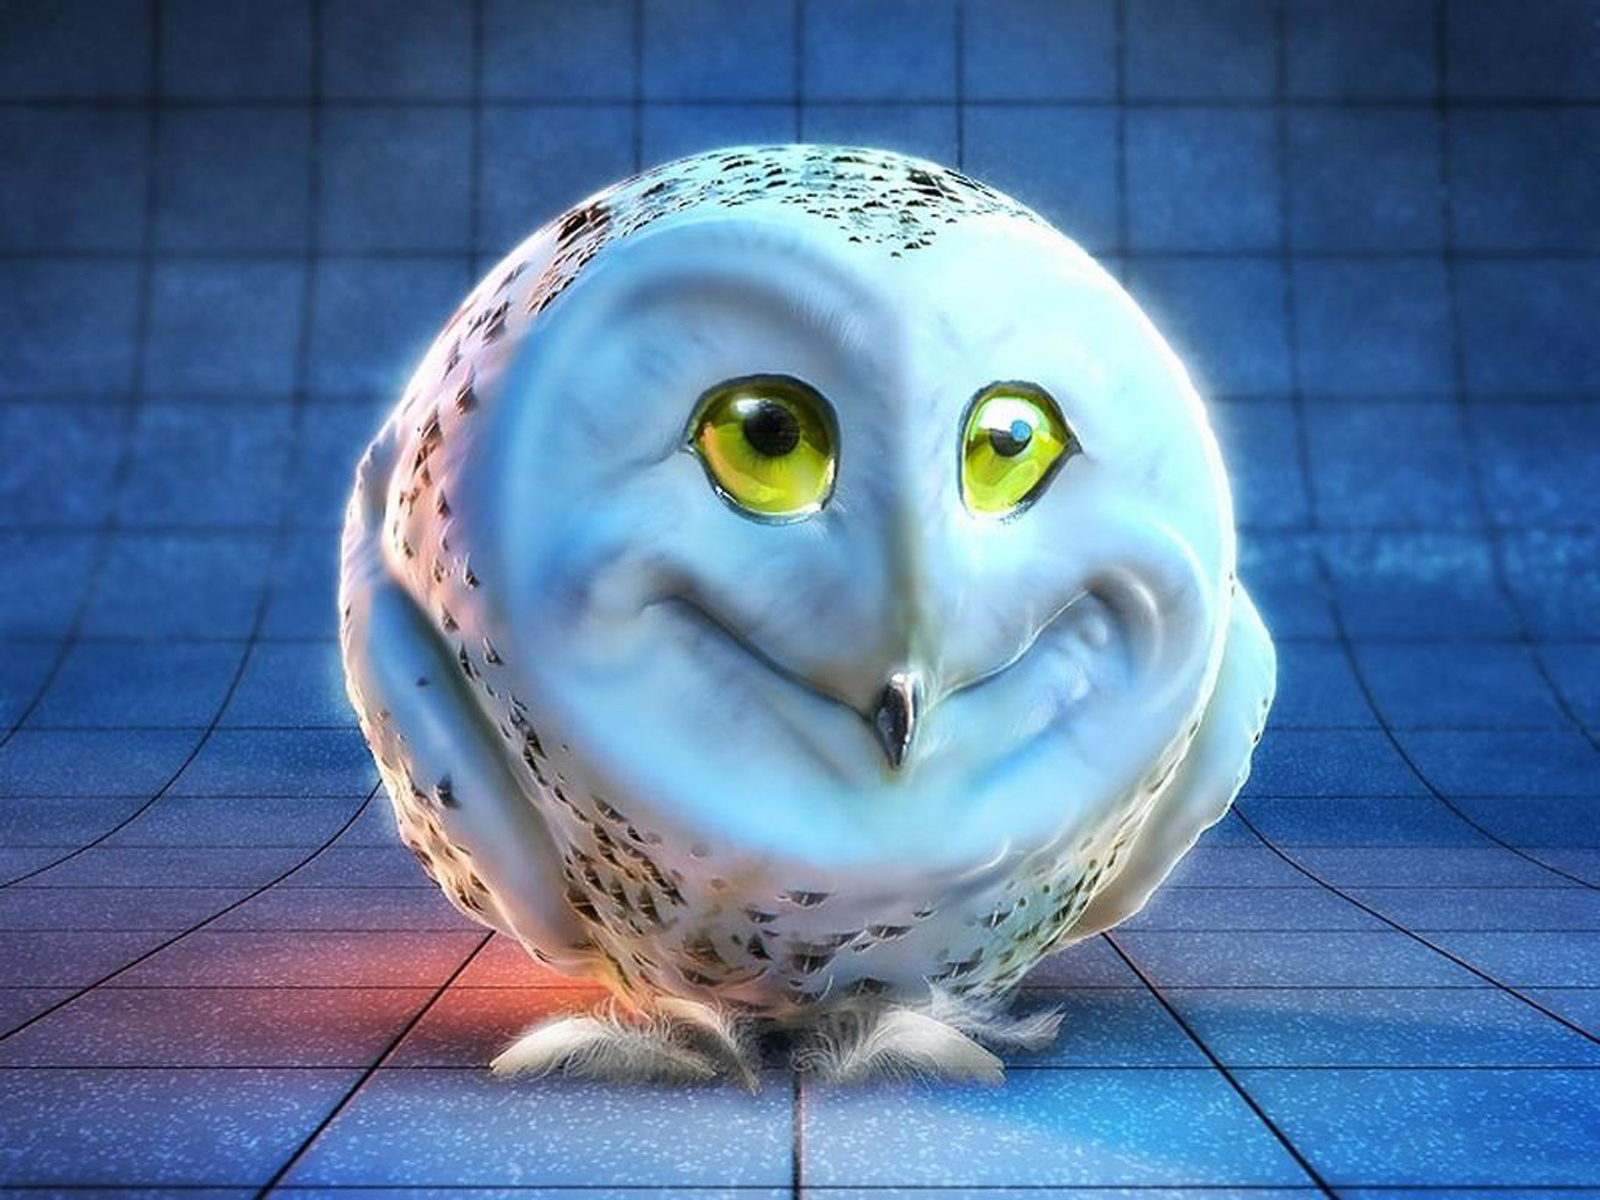 Weird Owl Face Puter Desktop Wallpaper Pictures Image